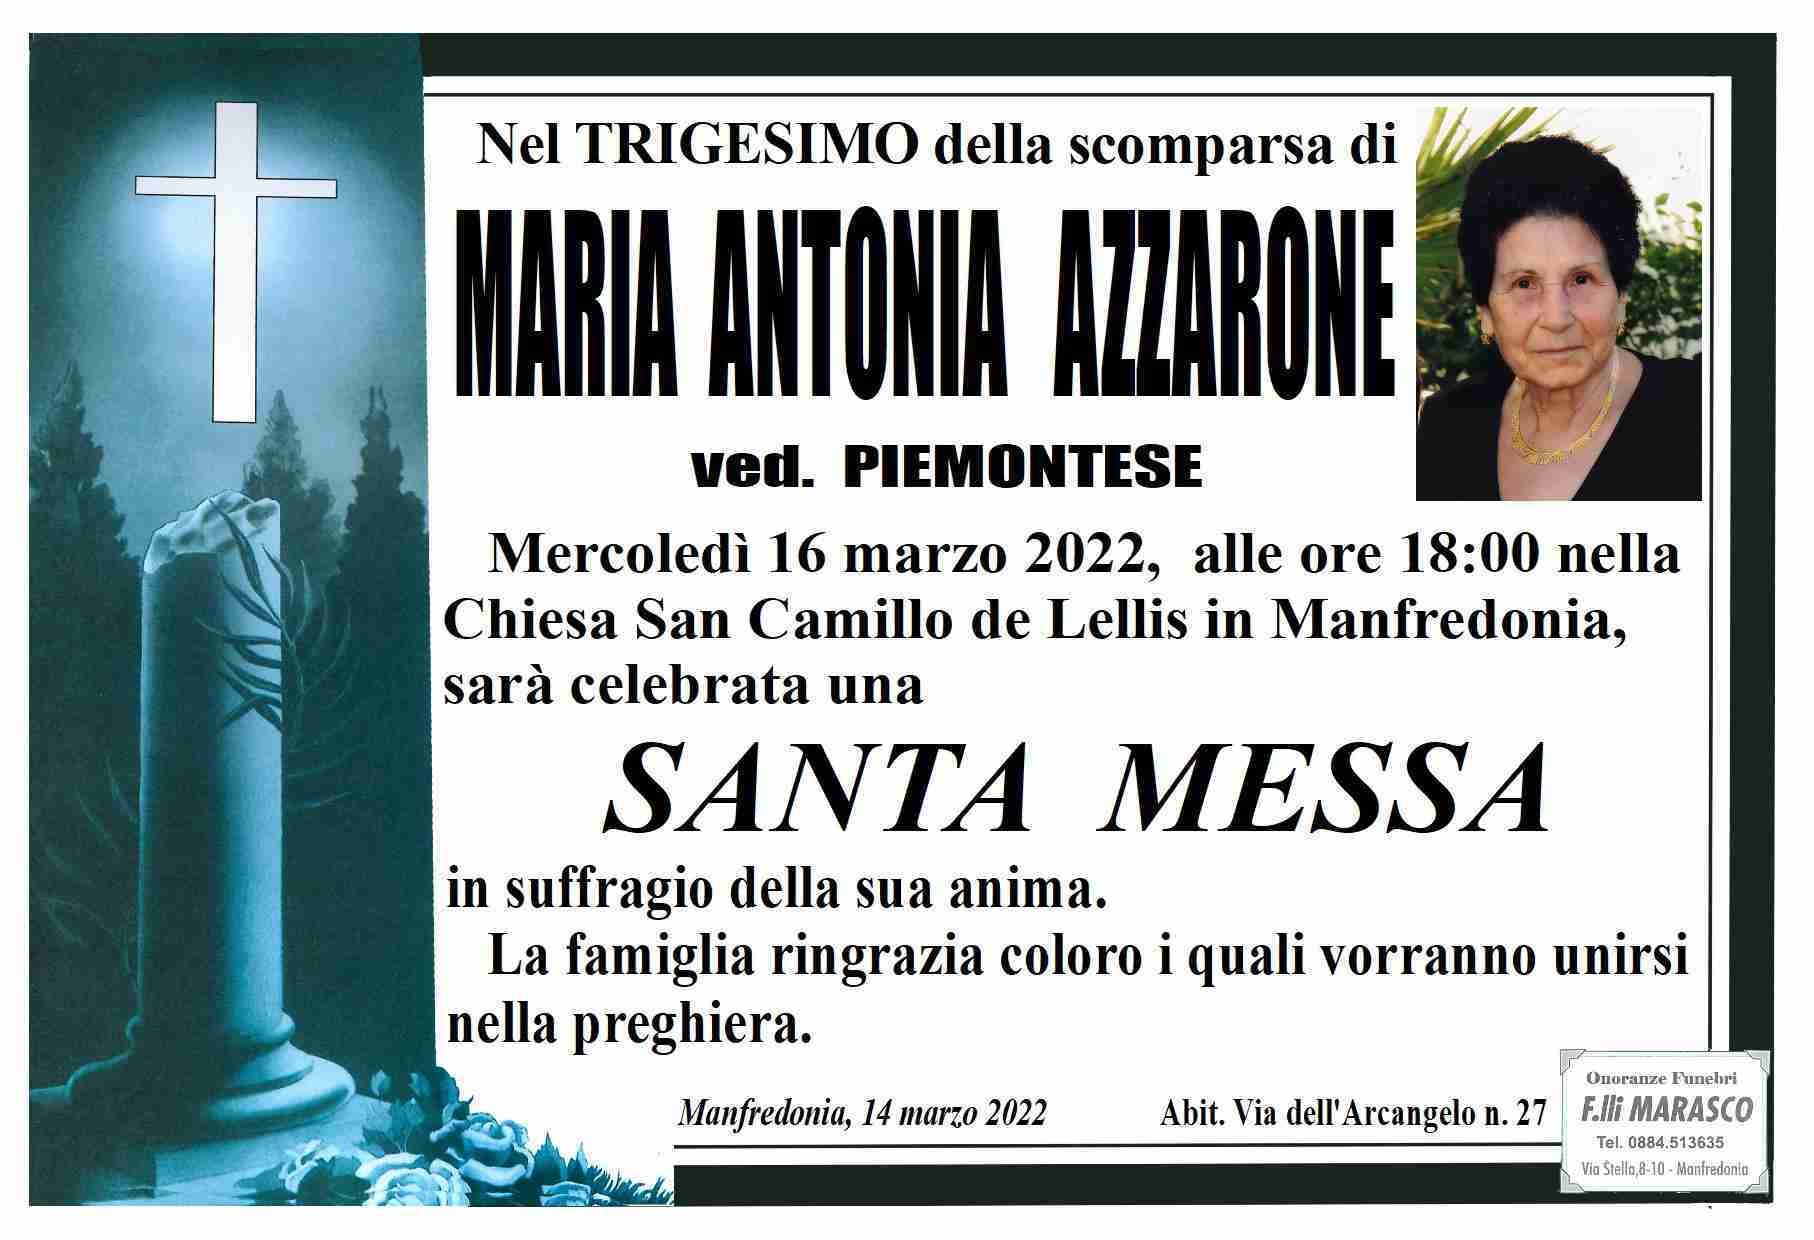 Maria Antonia Azzarone